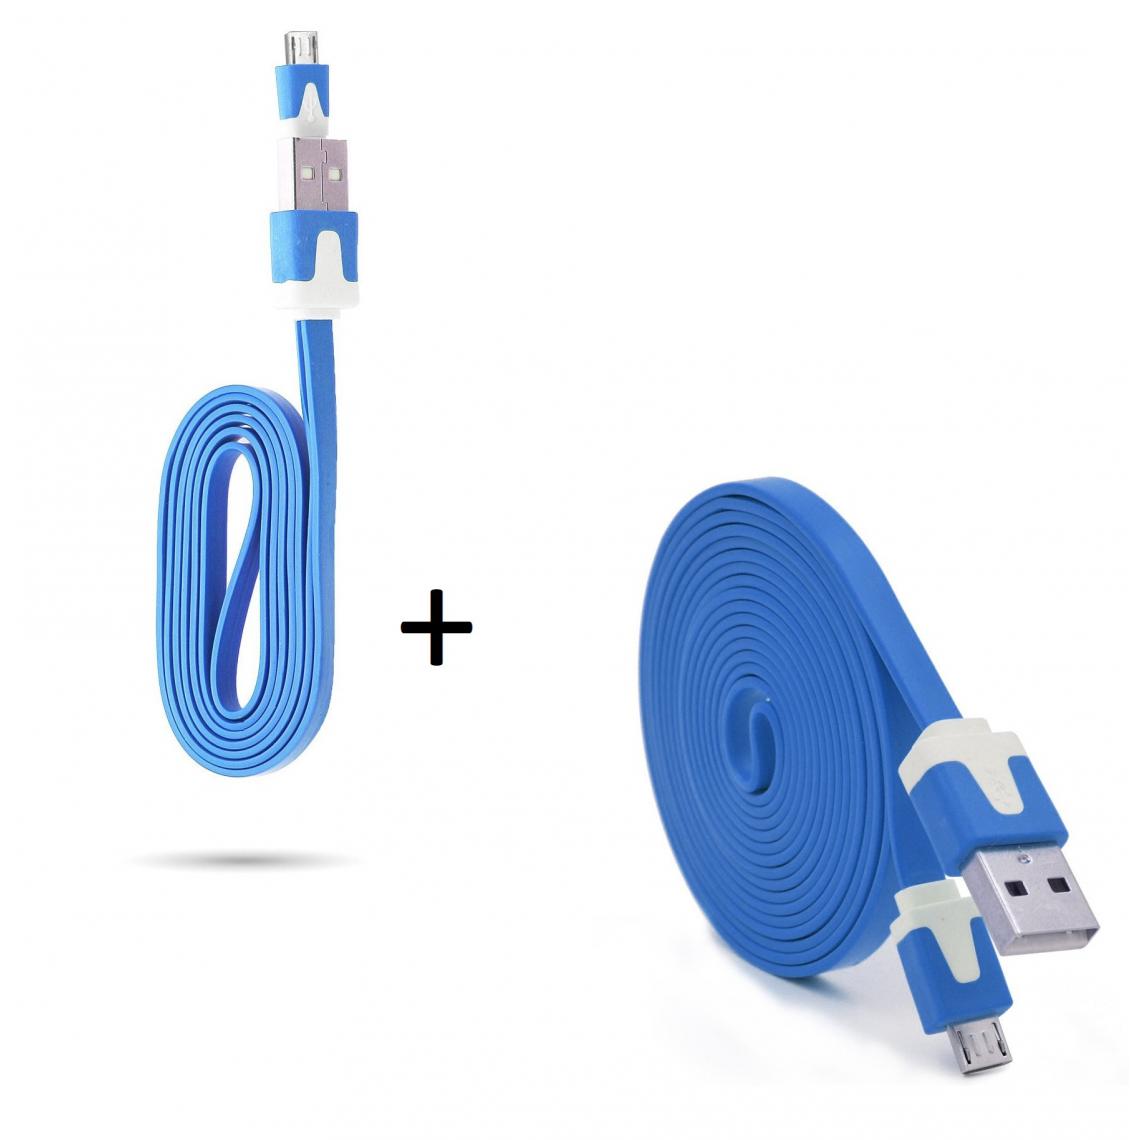 Shot - Pack Chargeur pour Enceinte Bose SoundLink Micro Smartphone Micro USB (Cable Noodle 3m + Cable Noodle 1m) Android (BLEU) - Chargeur secteur téléphone